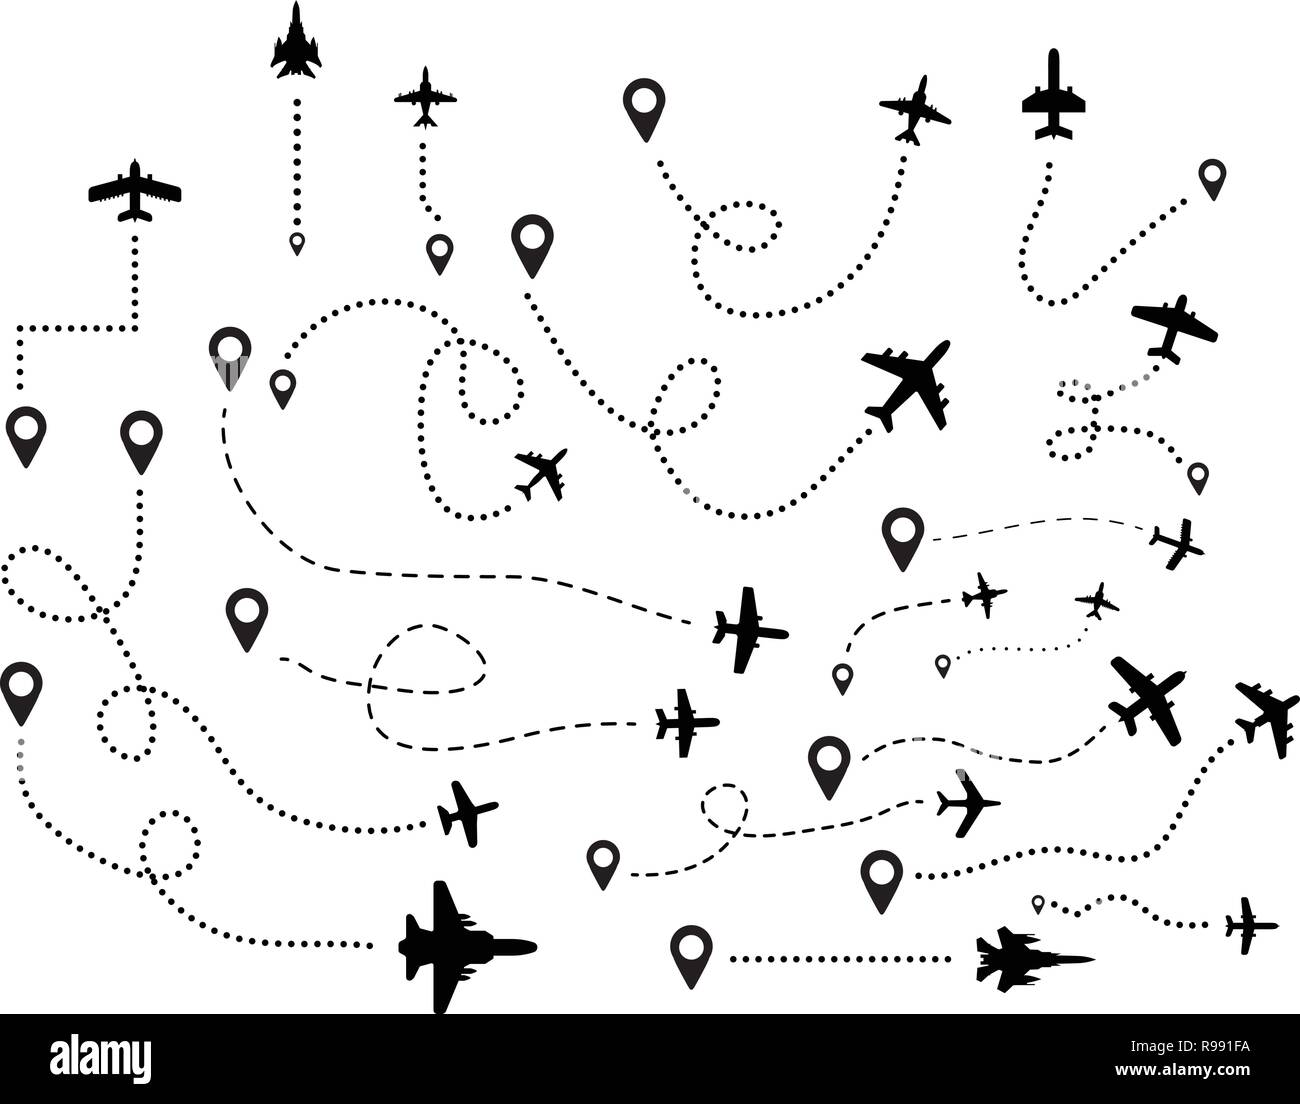 Eine Reihe von fliegen Flugzeuge und ihre Flugrouten vom Ausgangspunkt. Vector Abbildung: Stock Vektor